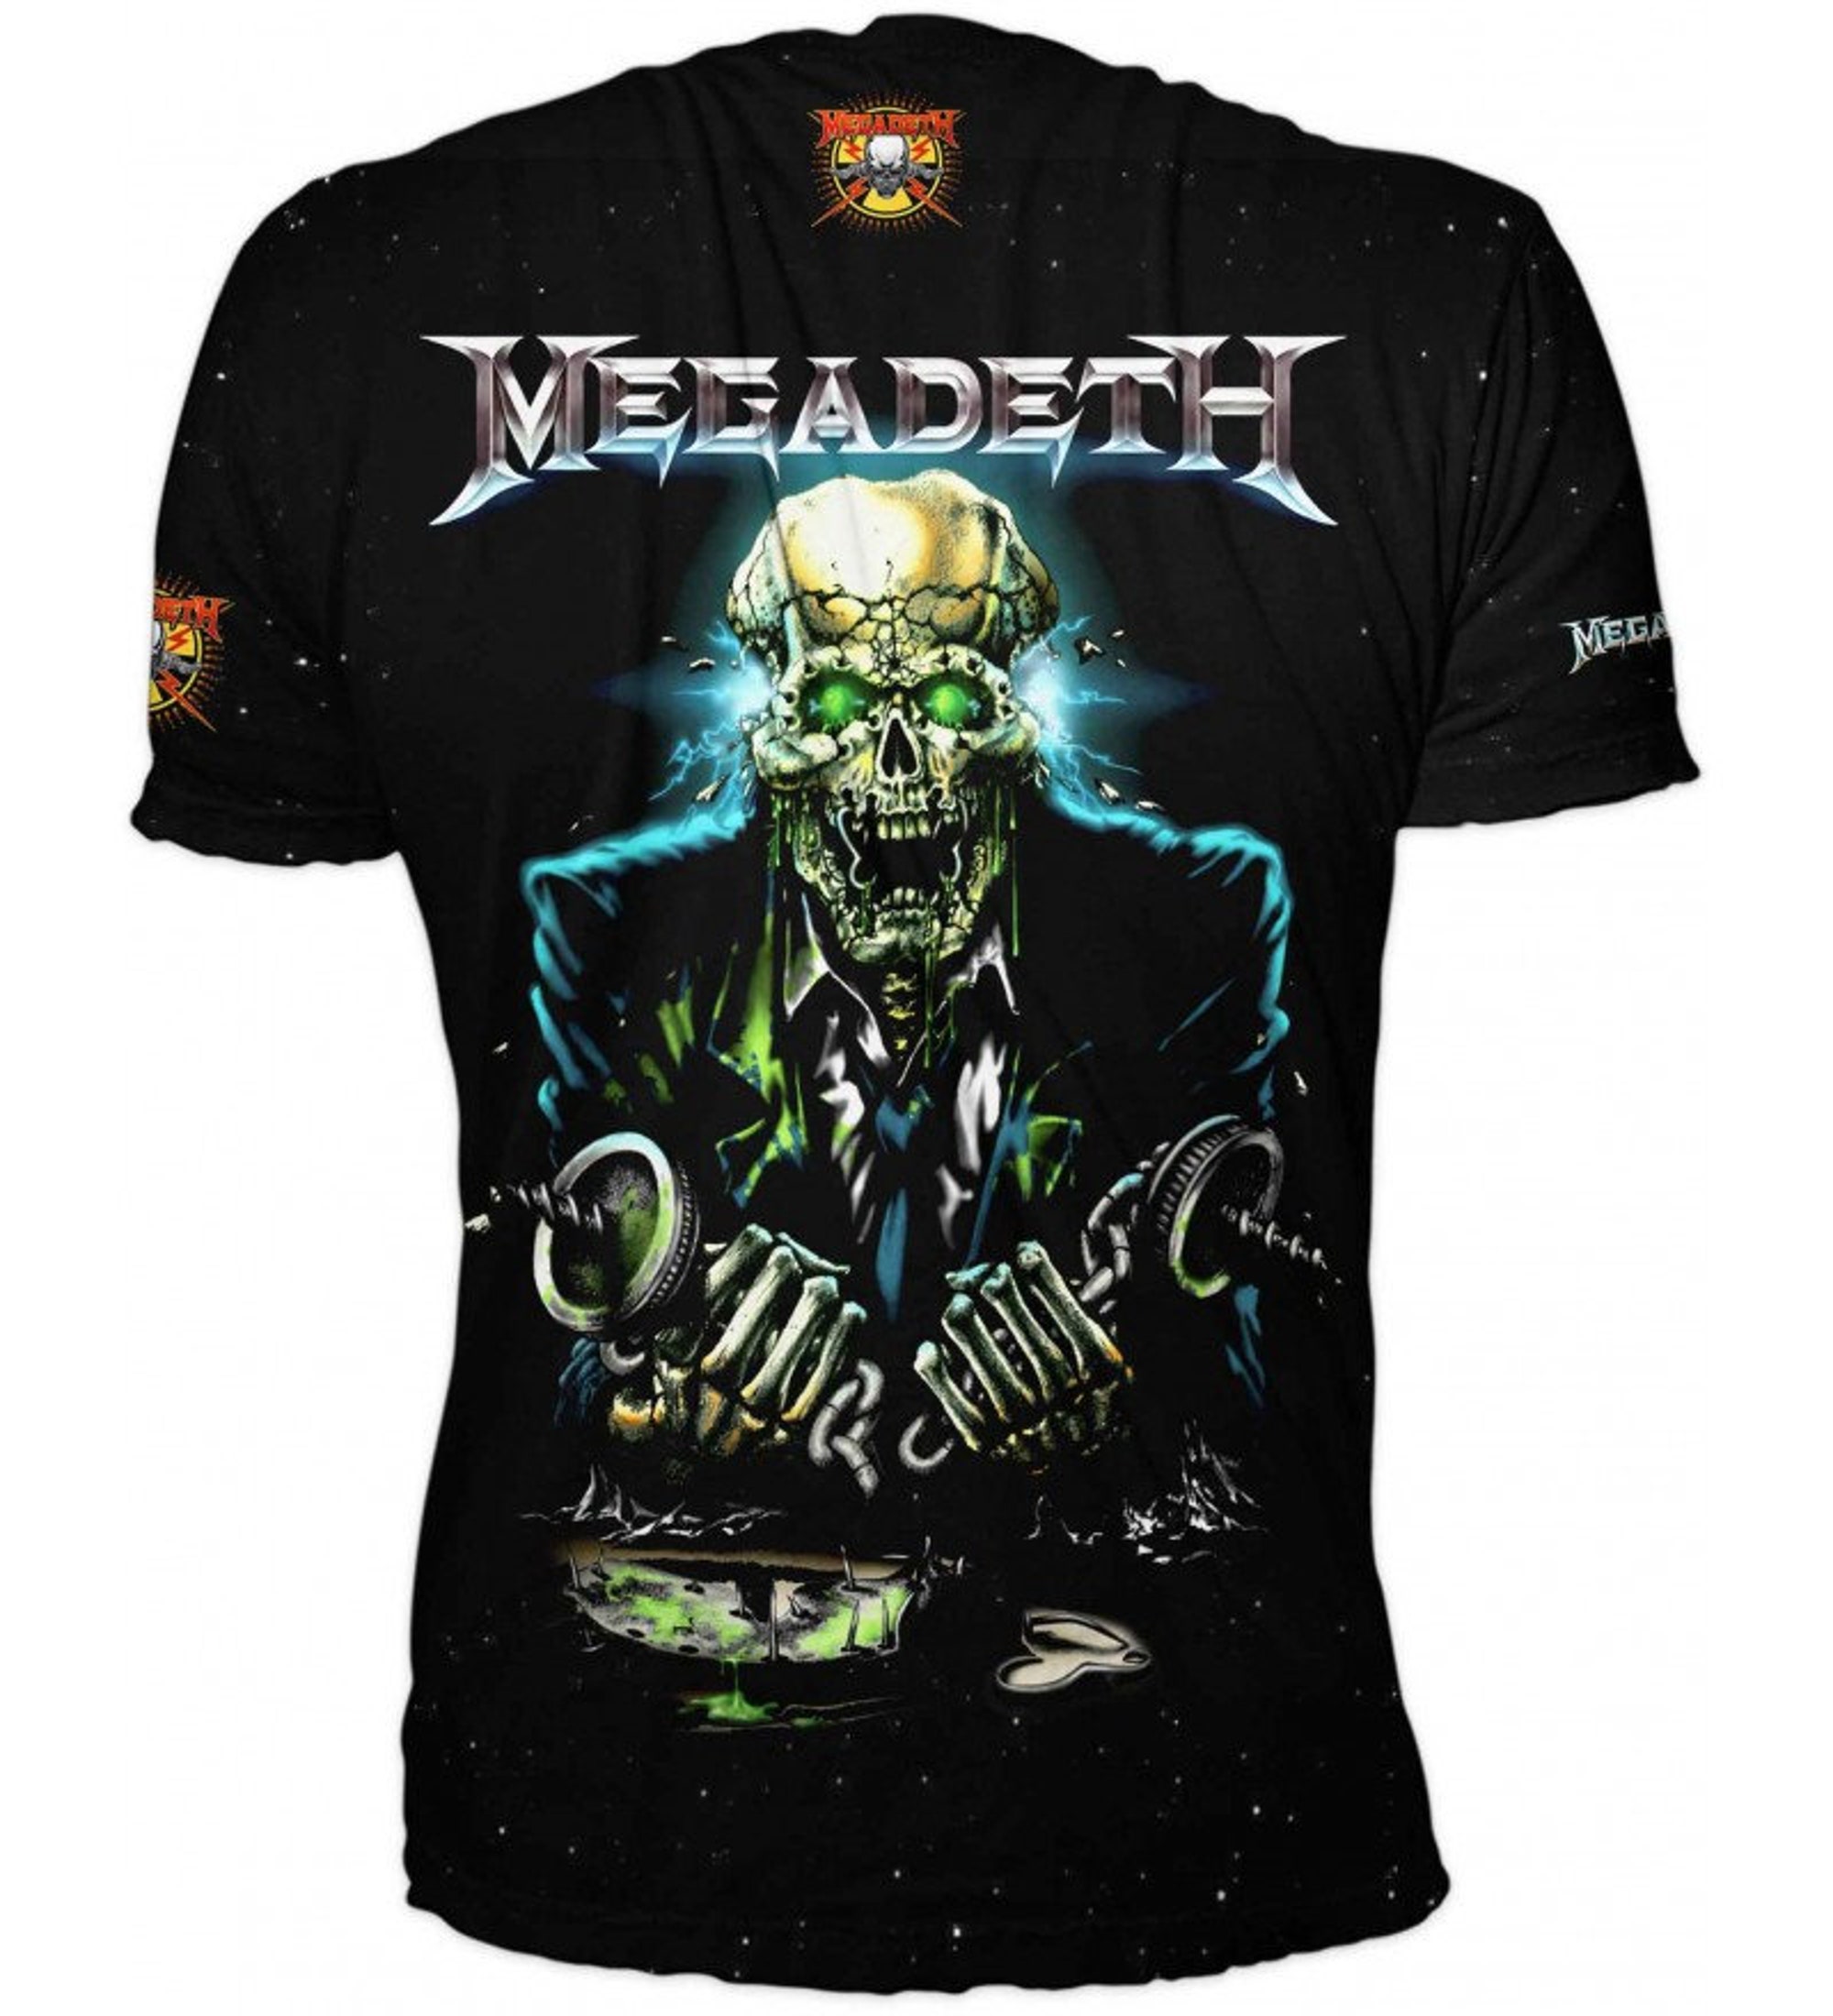 3D full Printed Brand NEW Fashion Tshirt Megadeth